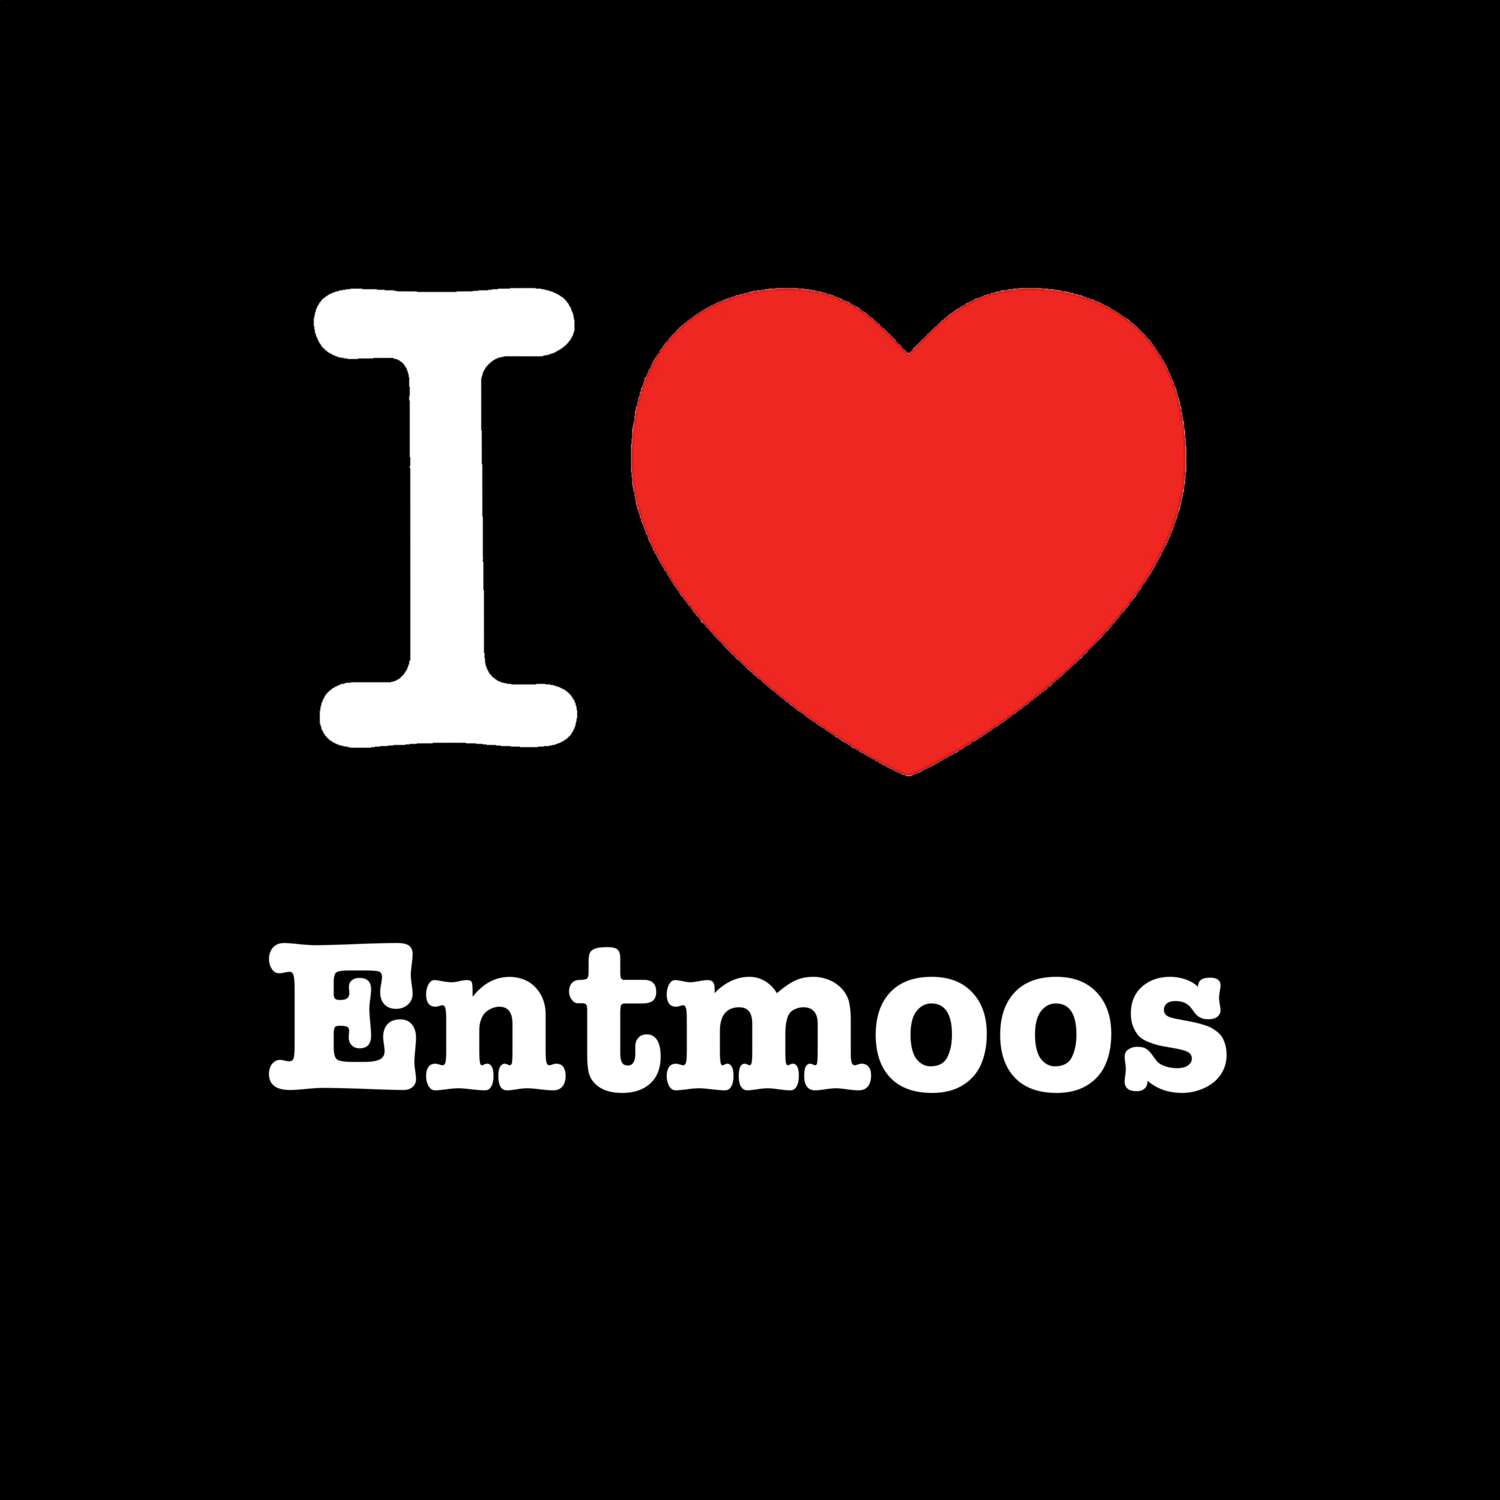 Entmoos T-Shirt »I love«